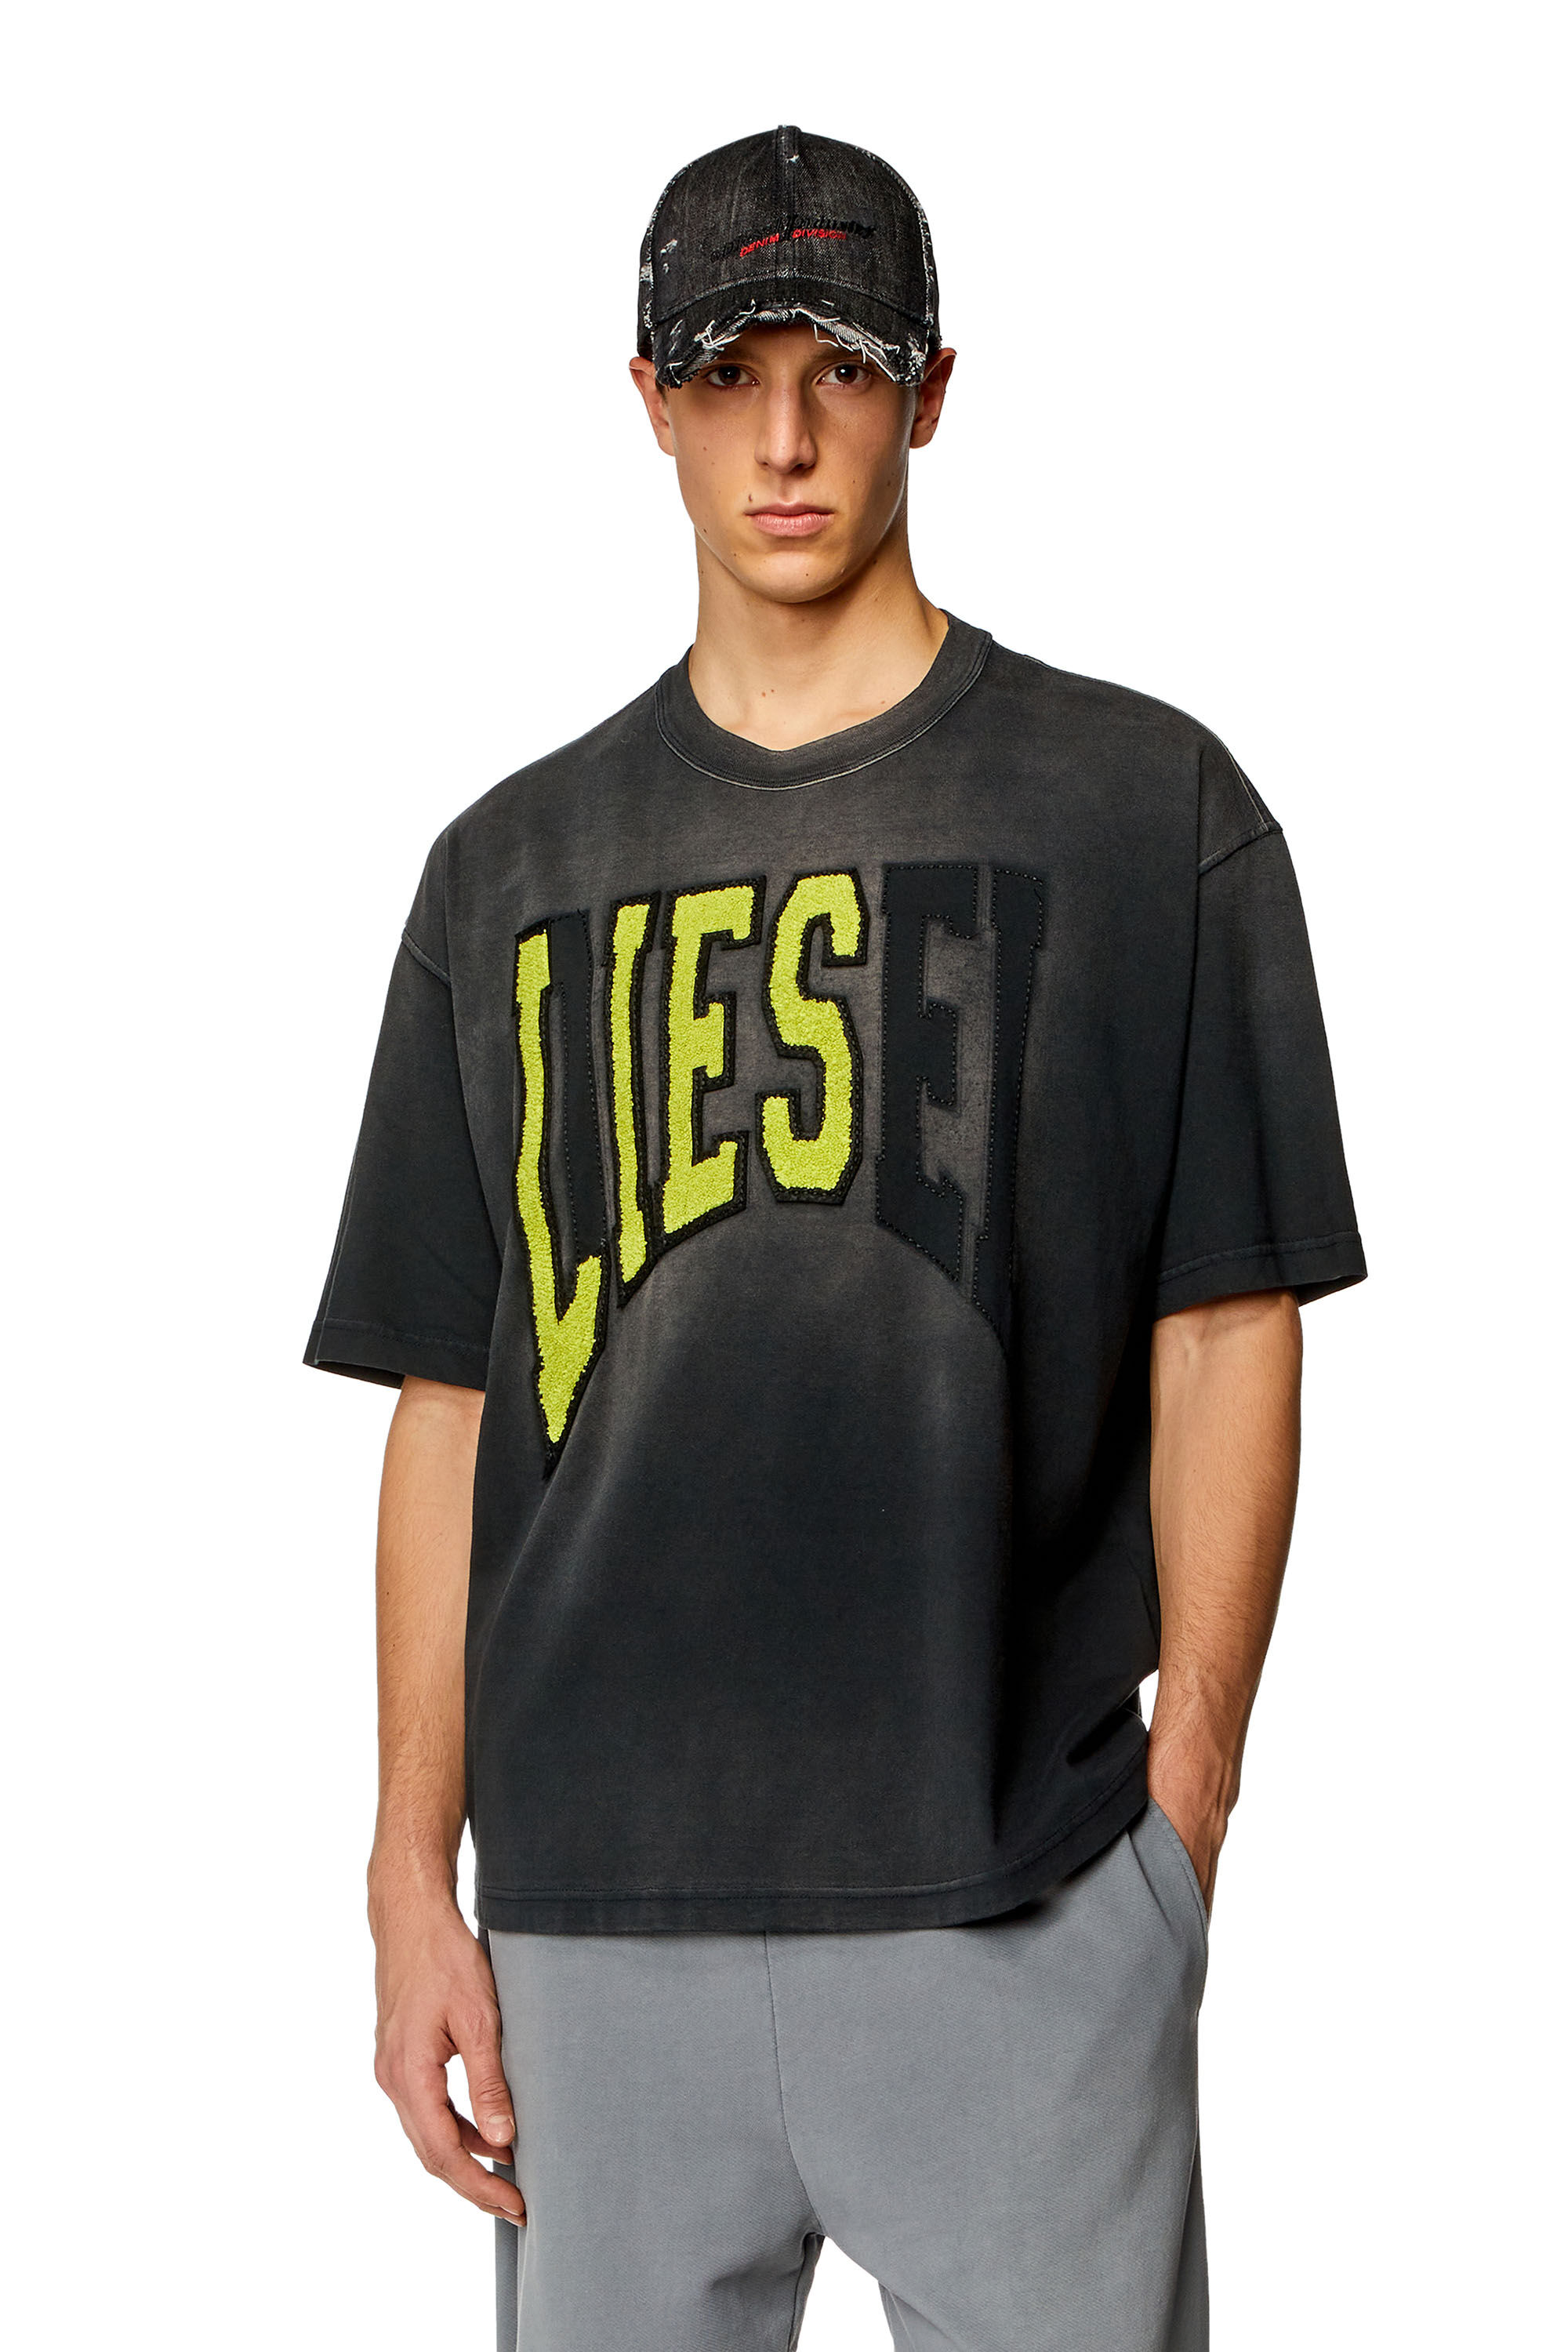 Diesel - T-WASH-N, Uomo T-shirt over con logo Diesel Lies in Nero - Image 3